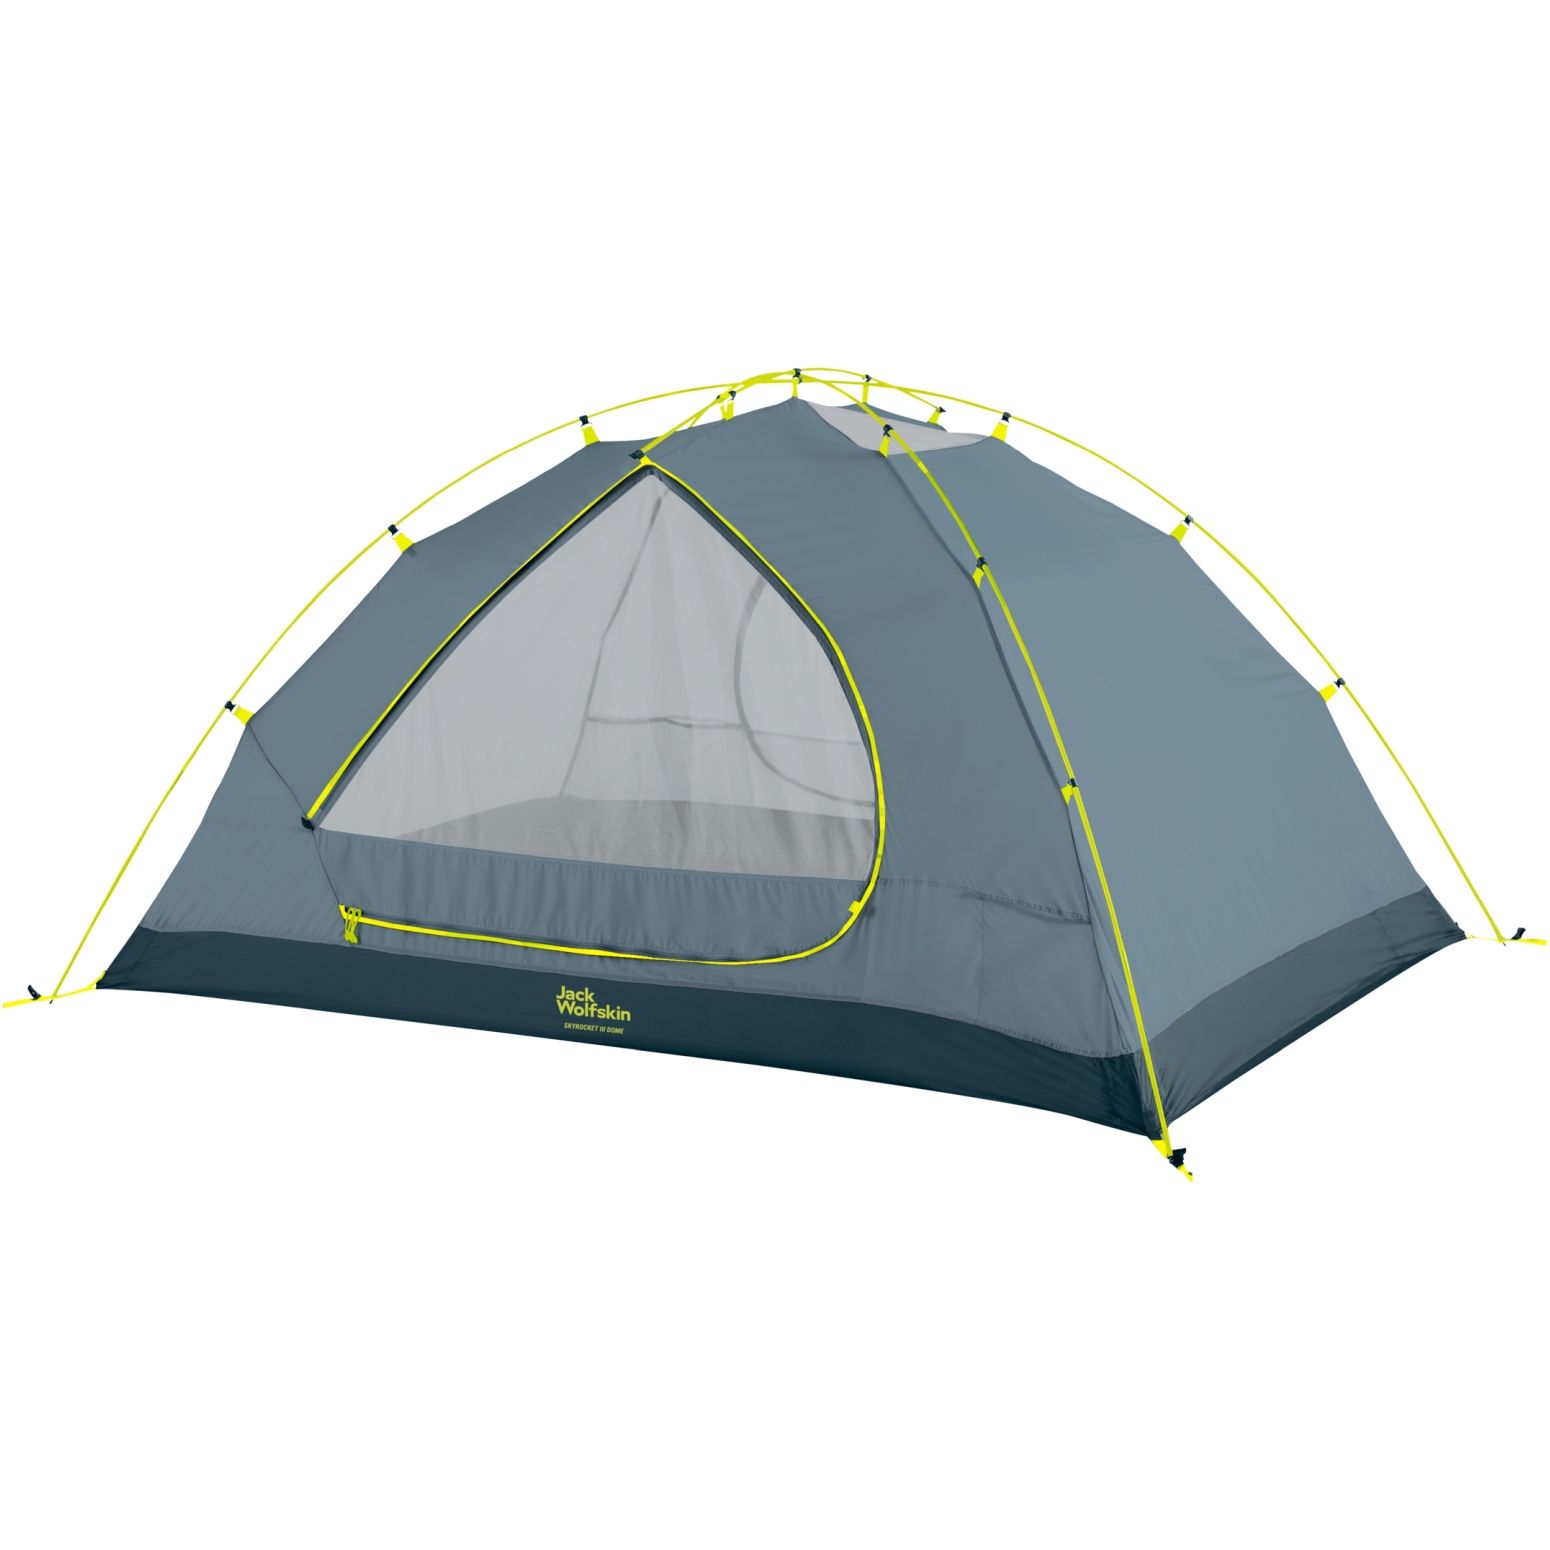 Eik Aan boord druiven Jack Wolfskin Skyrocket III Dome Tent - ginkgo green | BIKE24